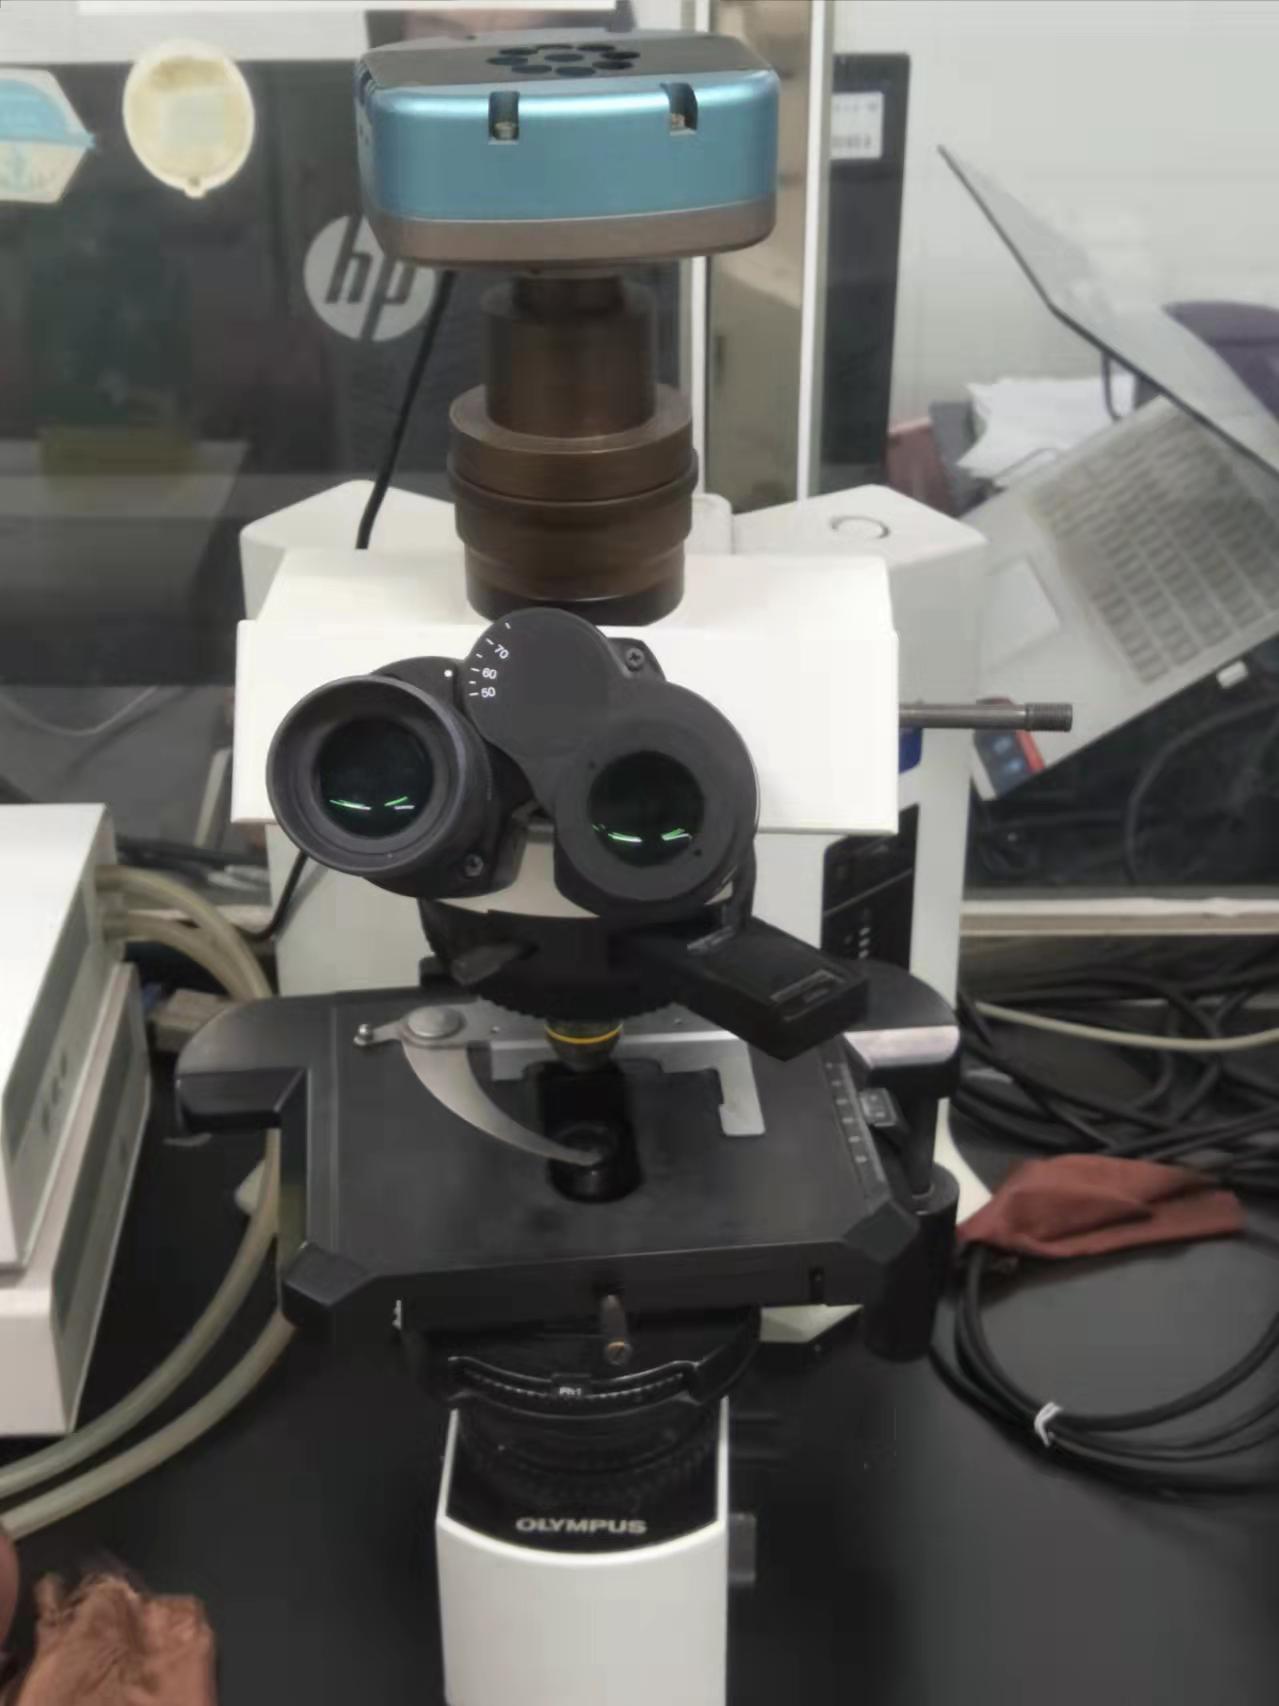 Leica徕卡偏光显微镜DM750P参数图片报价-化工仪器网